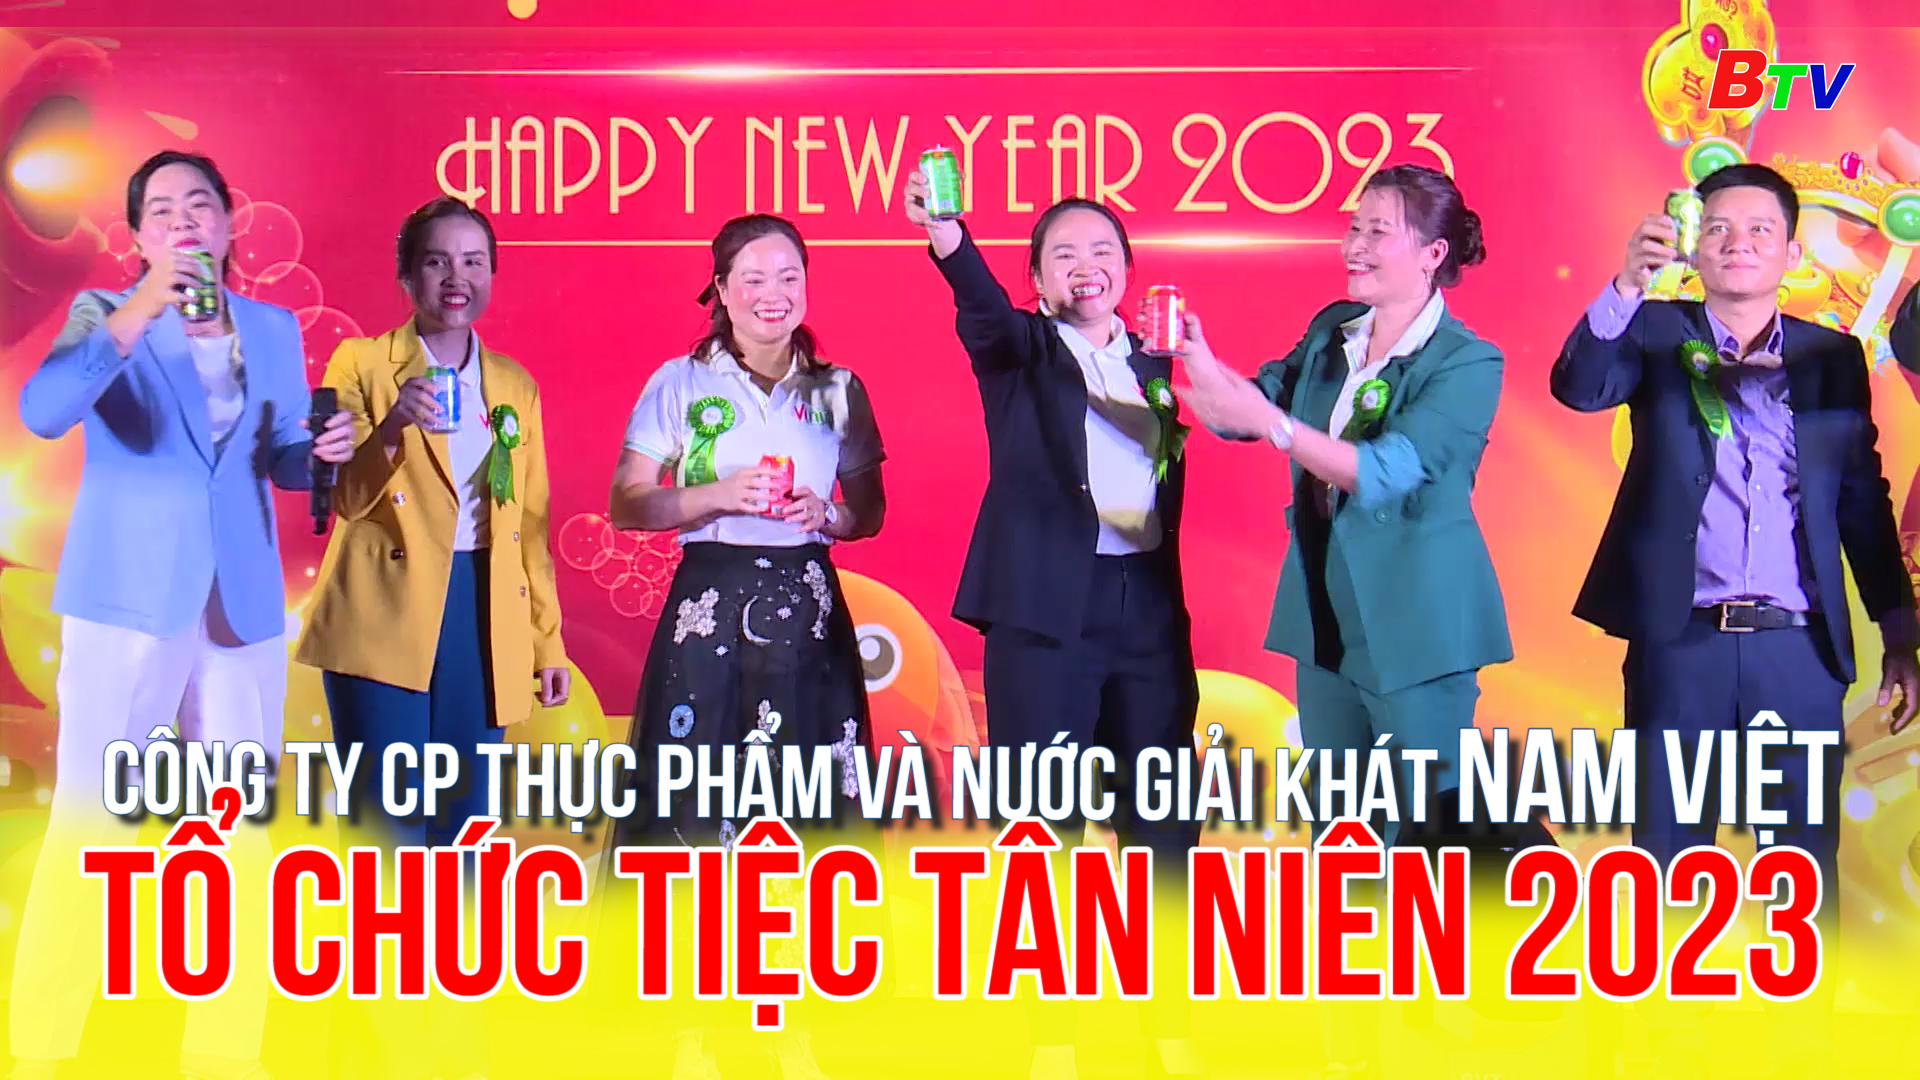 Công ty CP thực phẩm và nước giải khát Nam Việt tổ chức tiệc Tân niên 2023